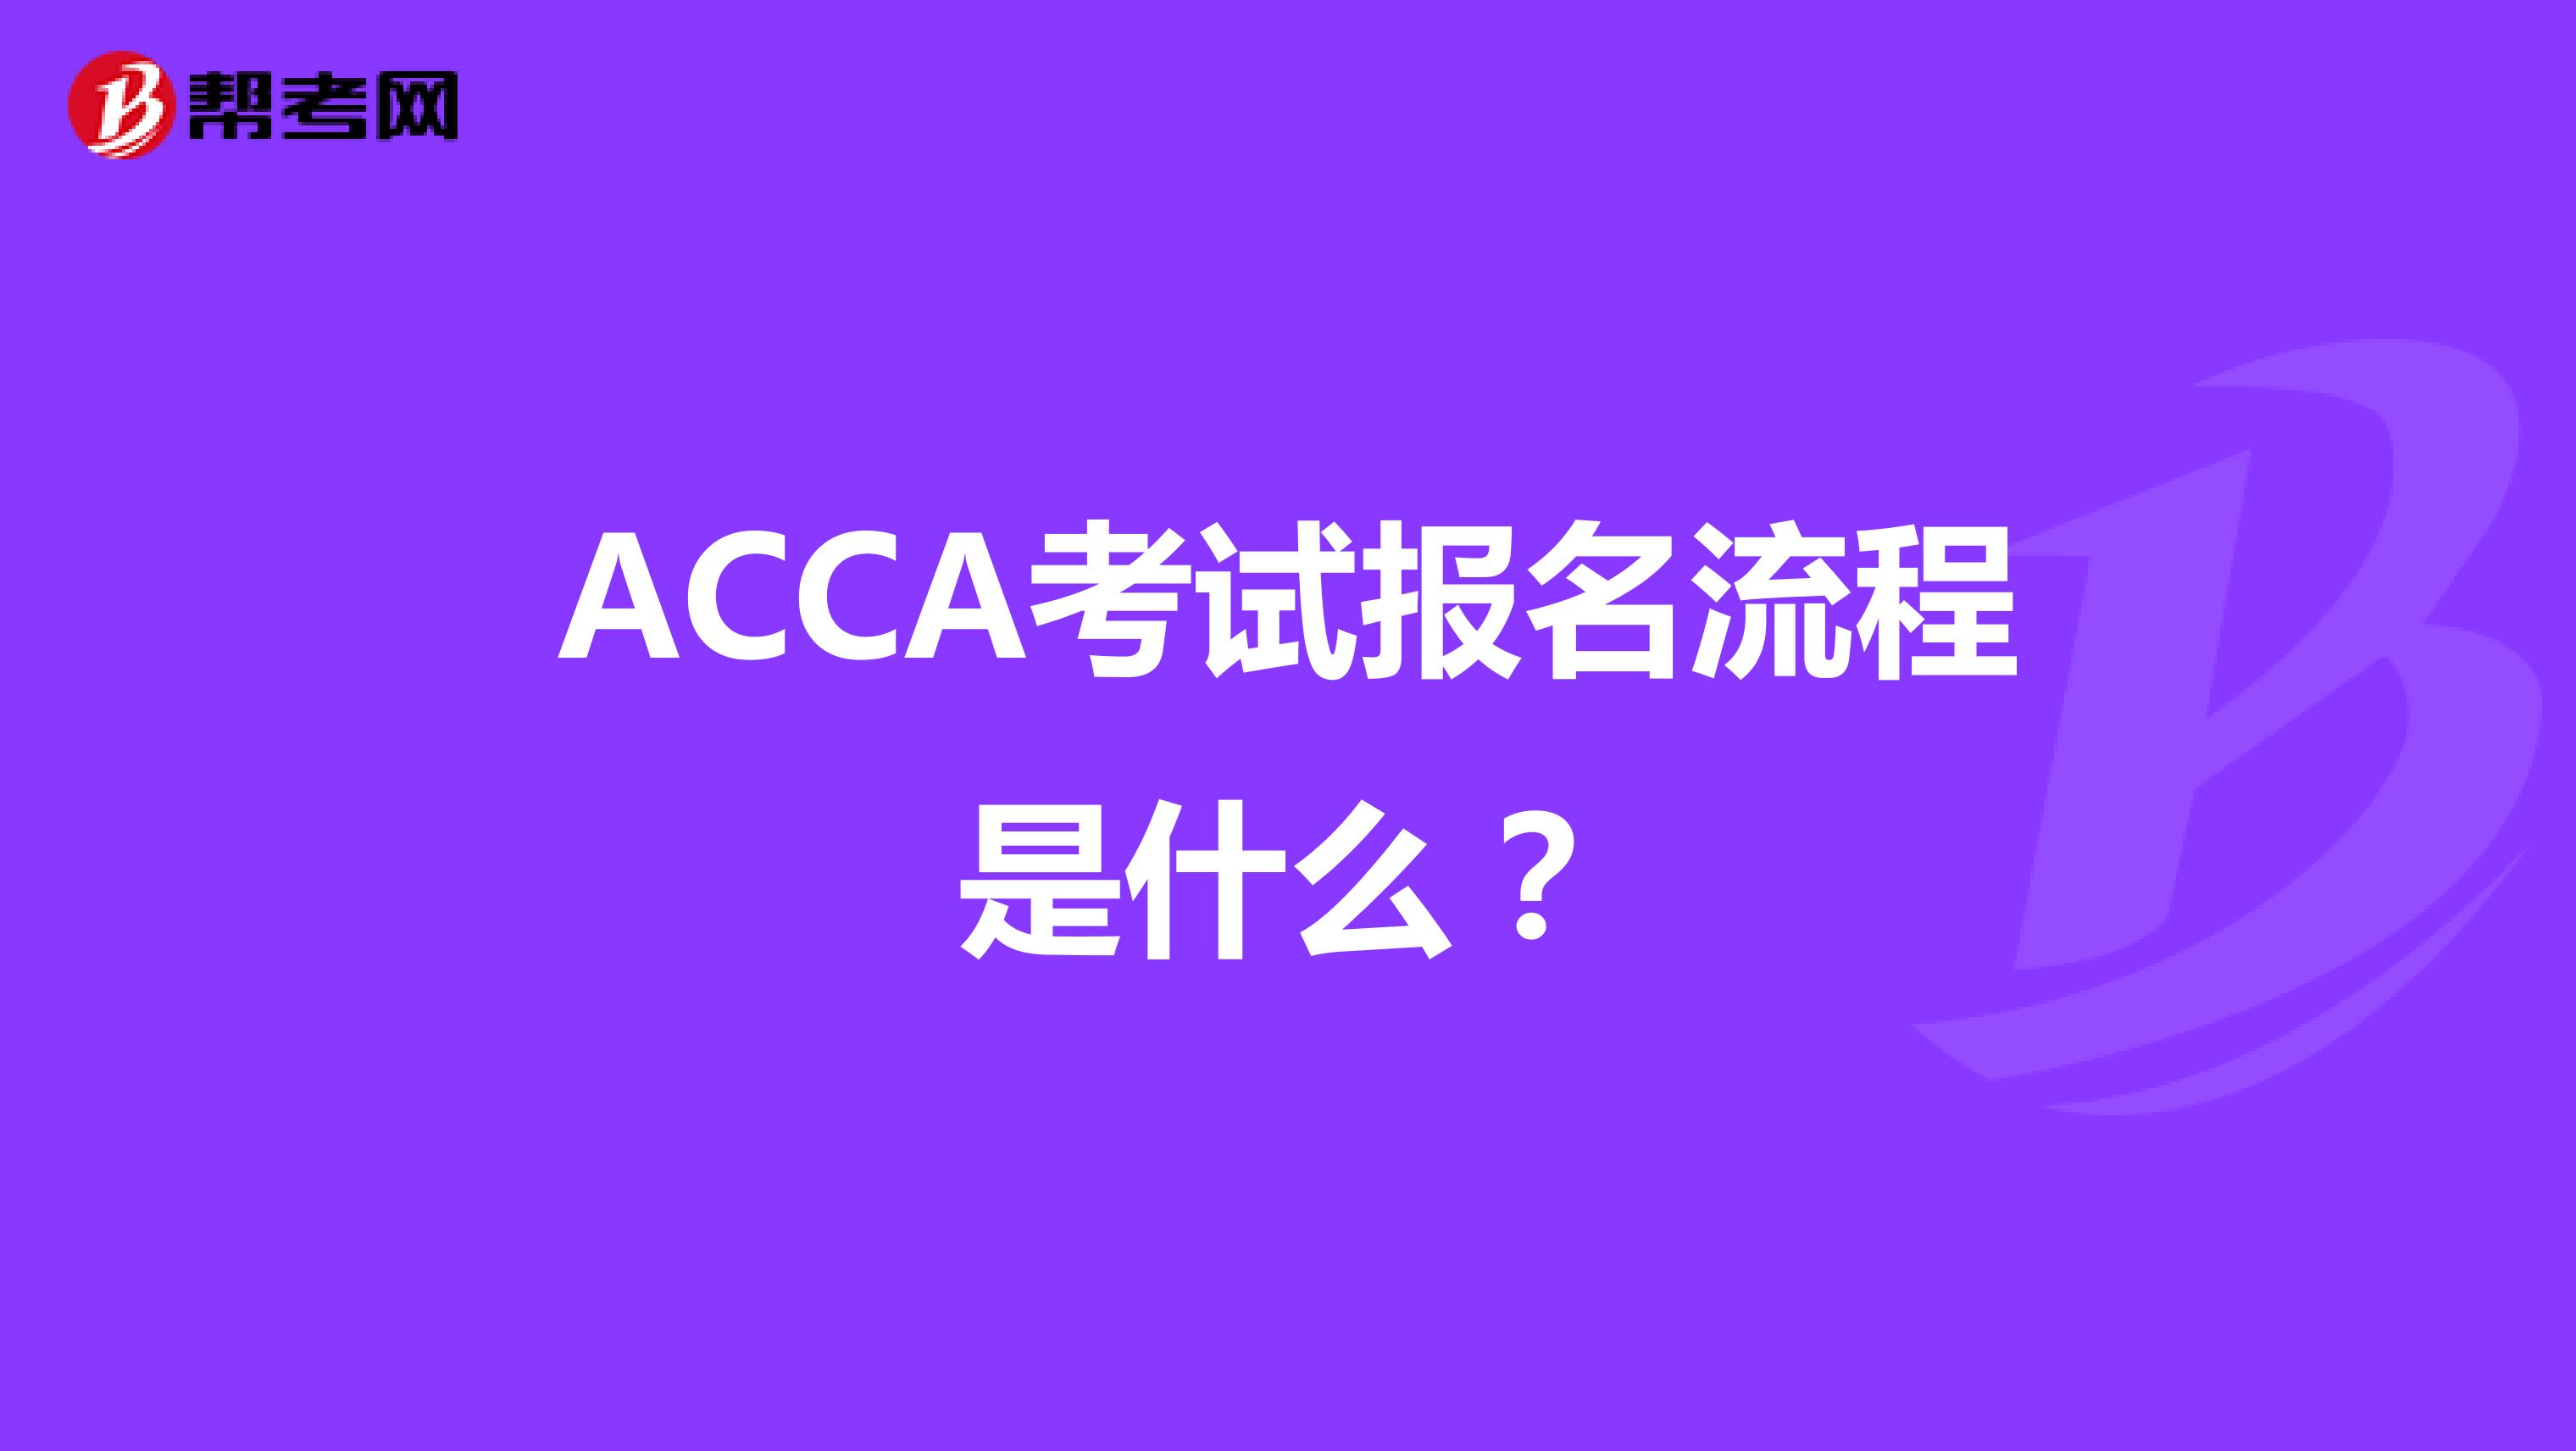 ACCA考试报名流程是什么？